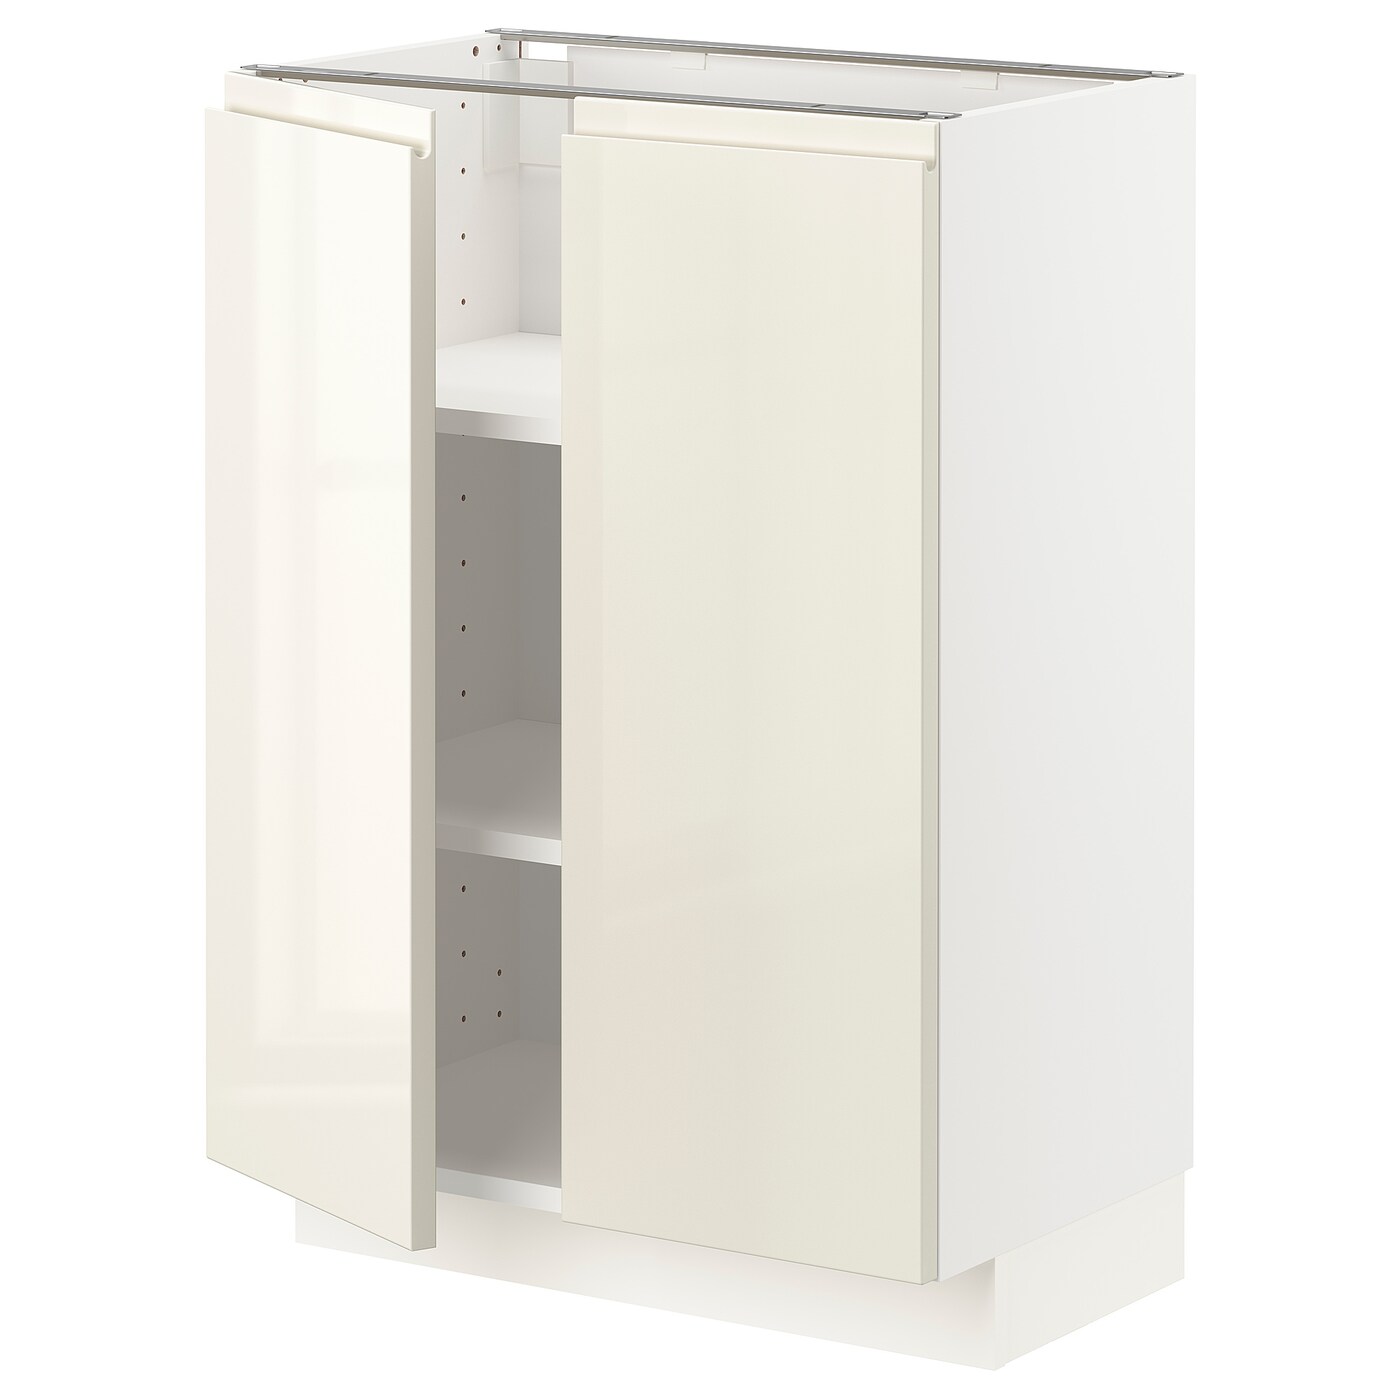 Напольный шкаф - METOD IKEA/ МЕТОД ИКЕА,  88х60 см, белый/светло-бежевый